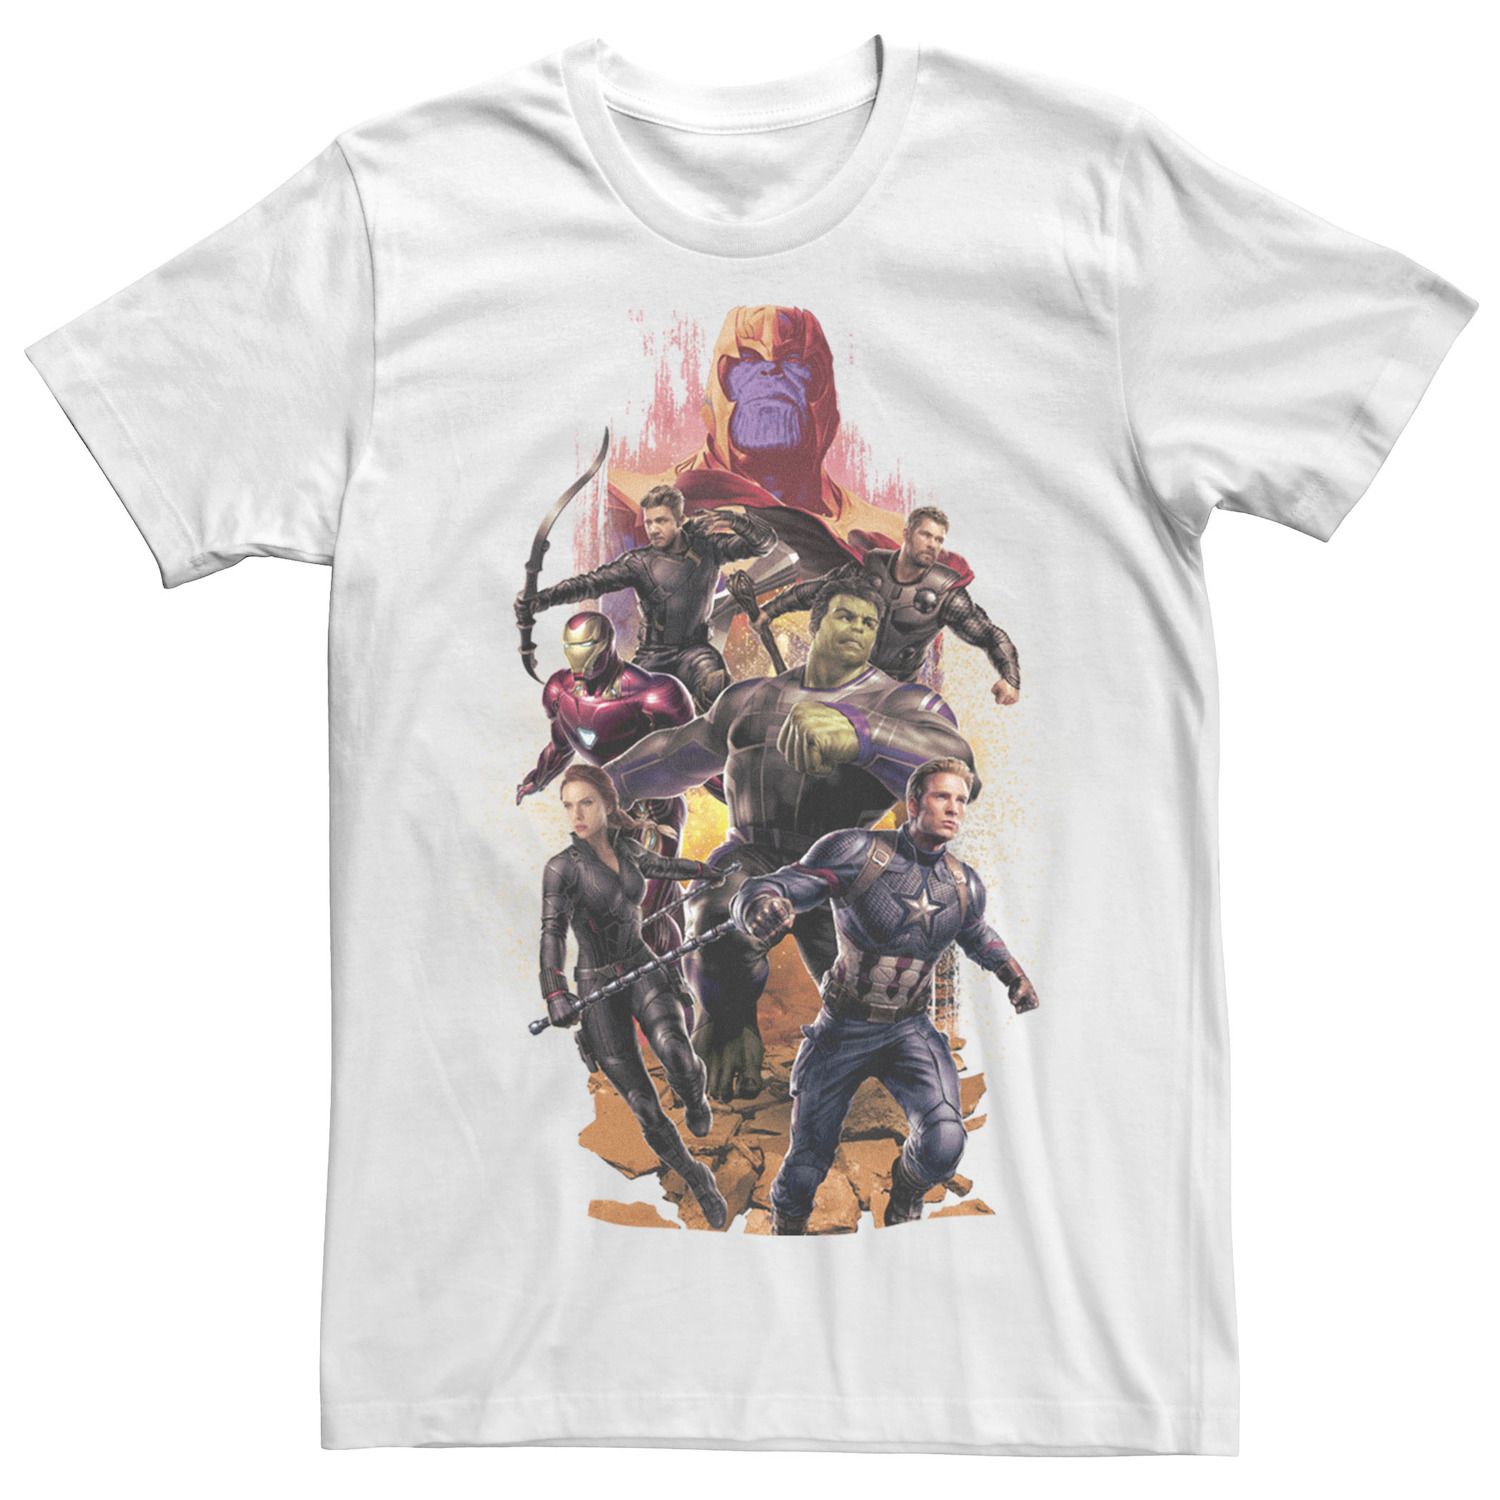 Мужская футболка с коллажем Avengers Endgame Final Battle Marvel